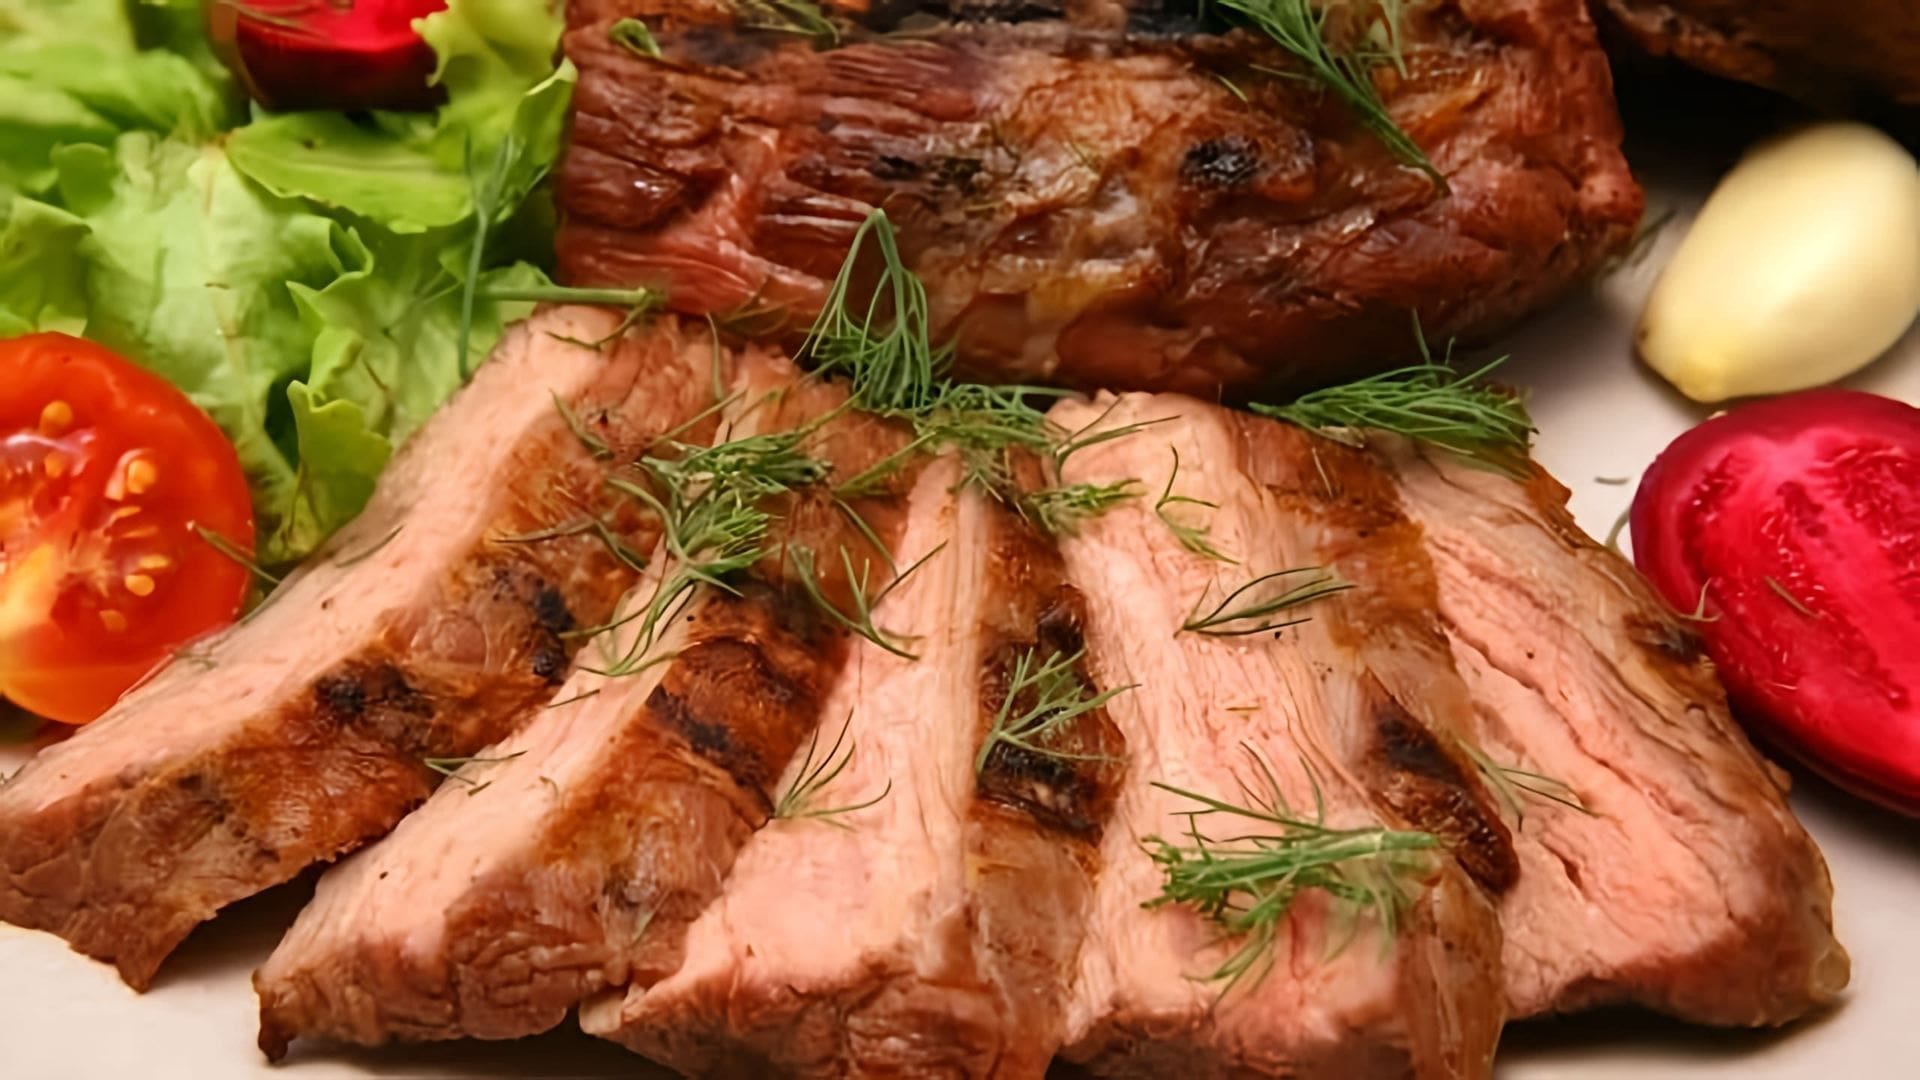 В этом видео демонстрируется простой и вкусный рецепт приготовления свиной шеи в рукаве